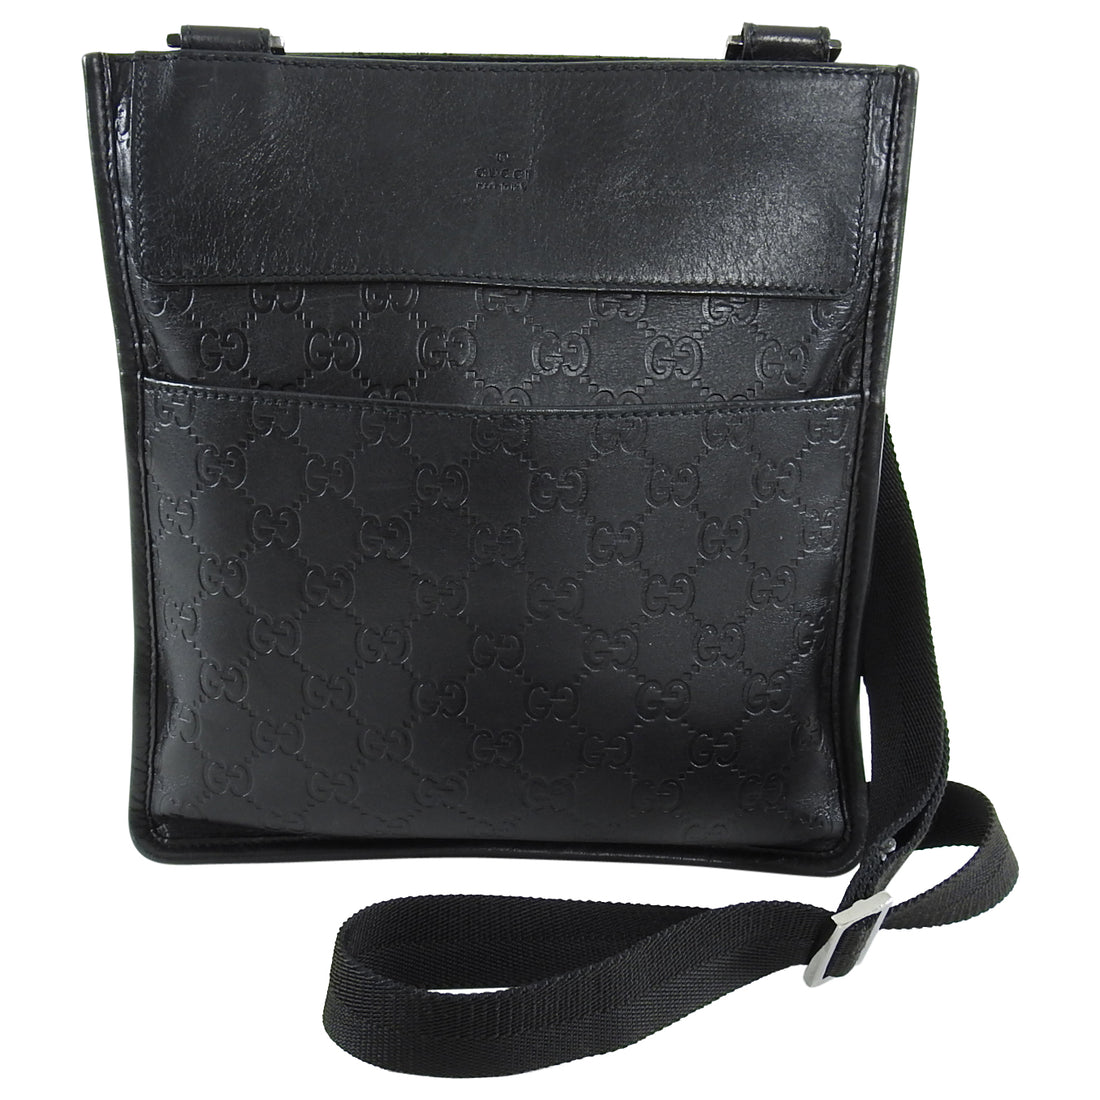 Gucci Guccissima Black GG Leather Monogram Crossbody Bag